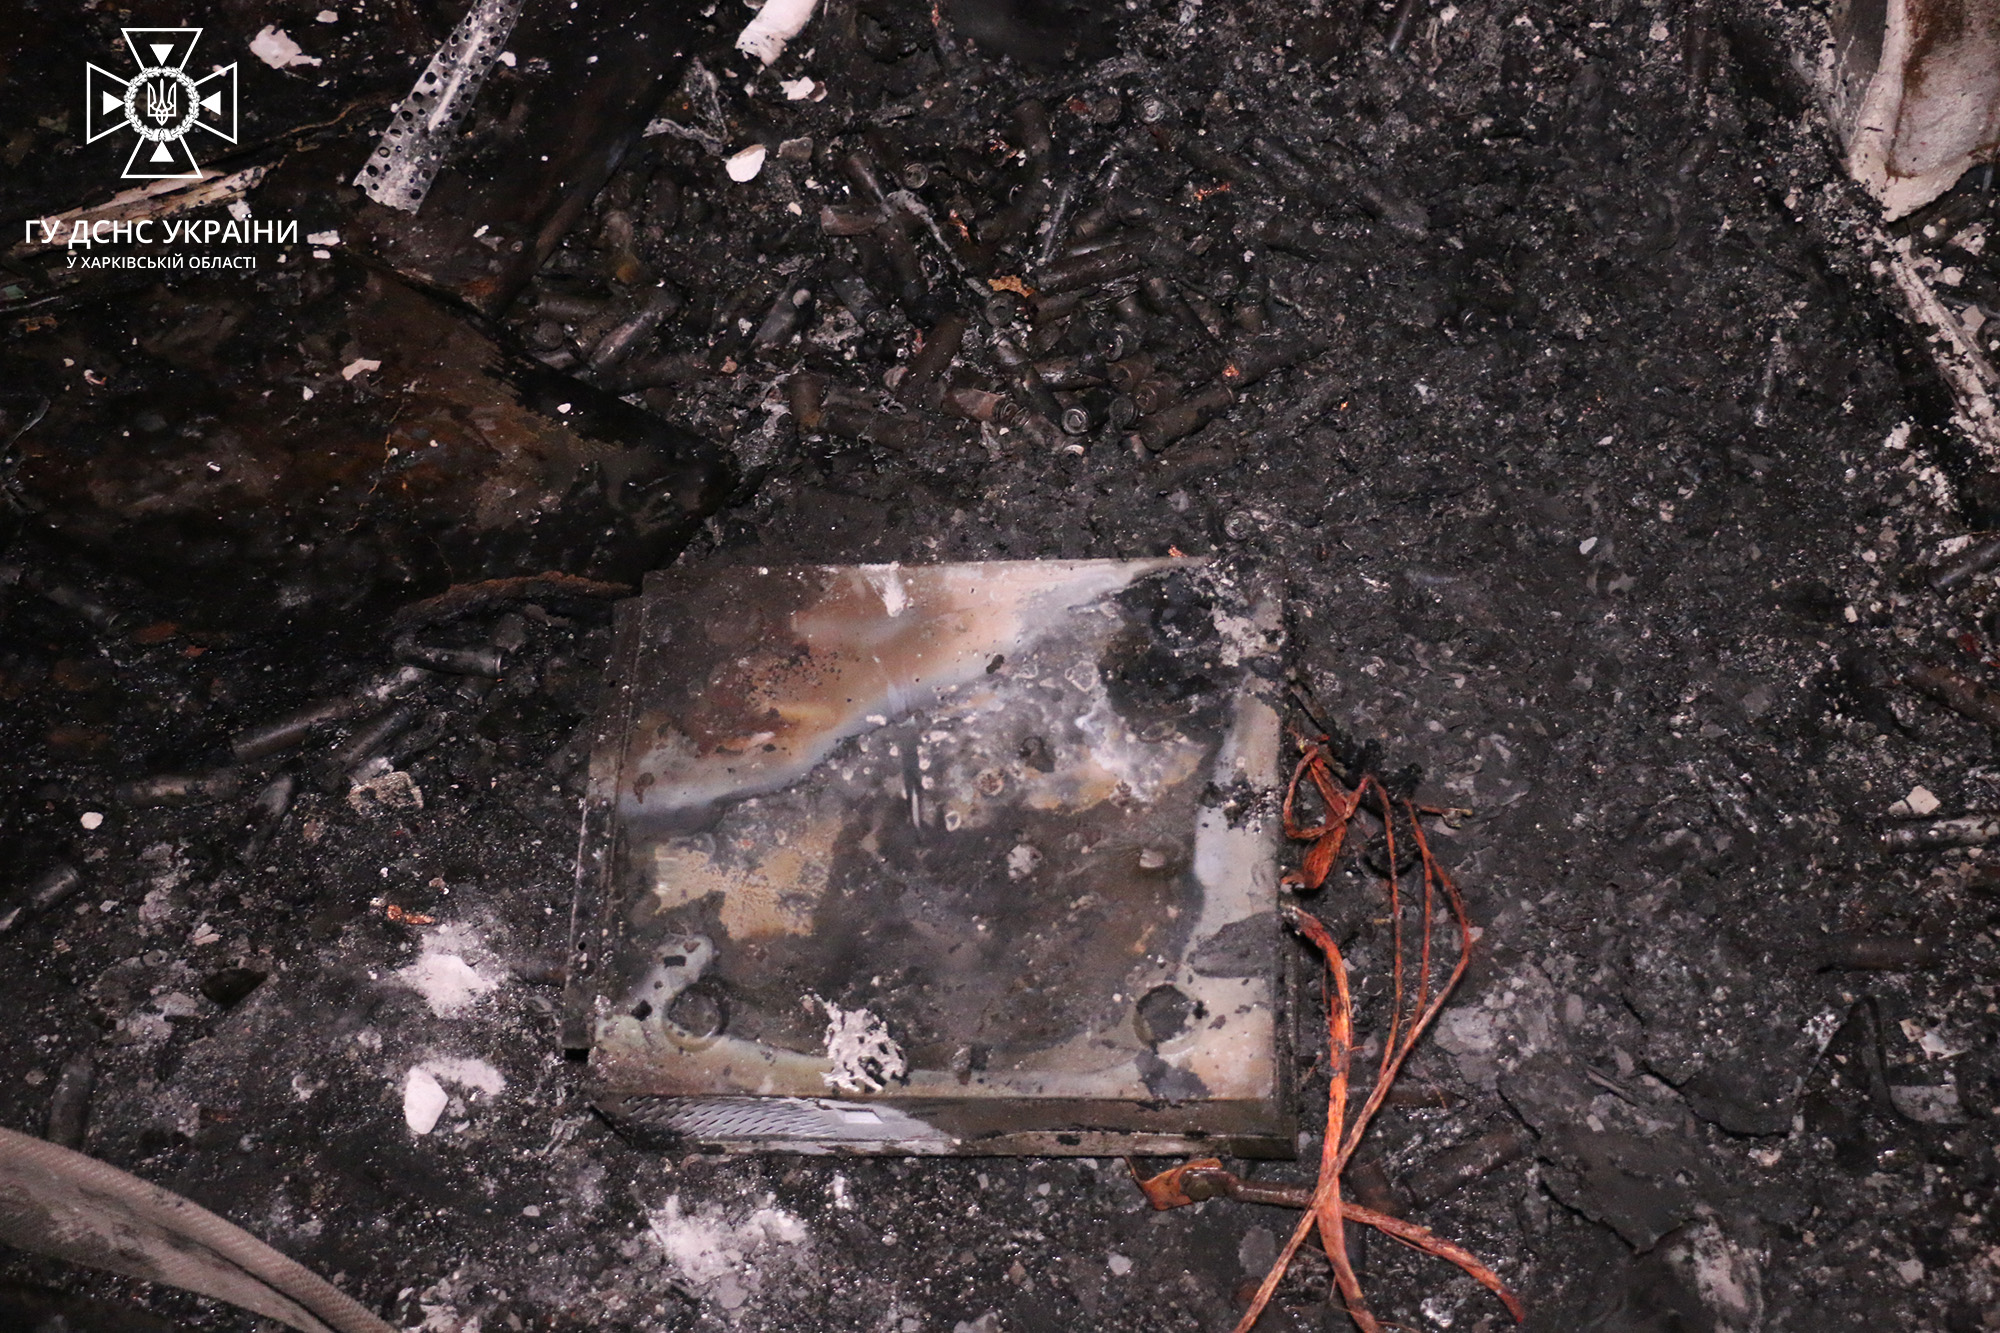 В квартире в Харькове на зарядке взорвалась электробатарея: произошел пожар